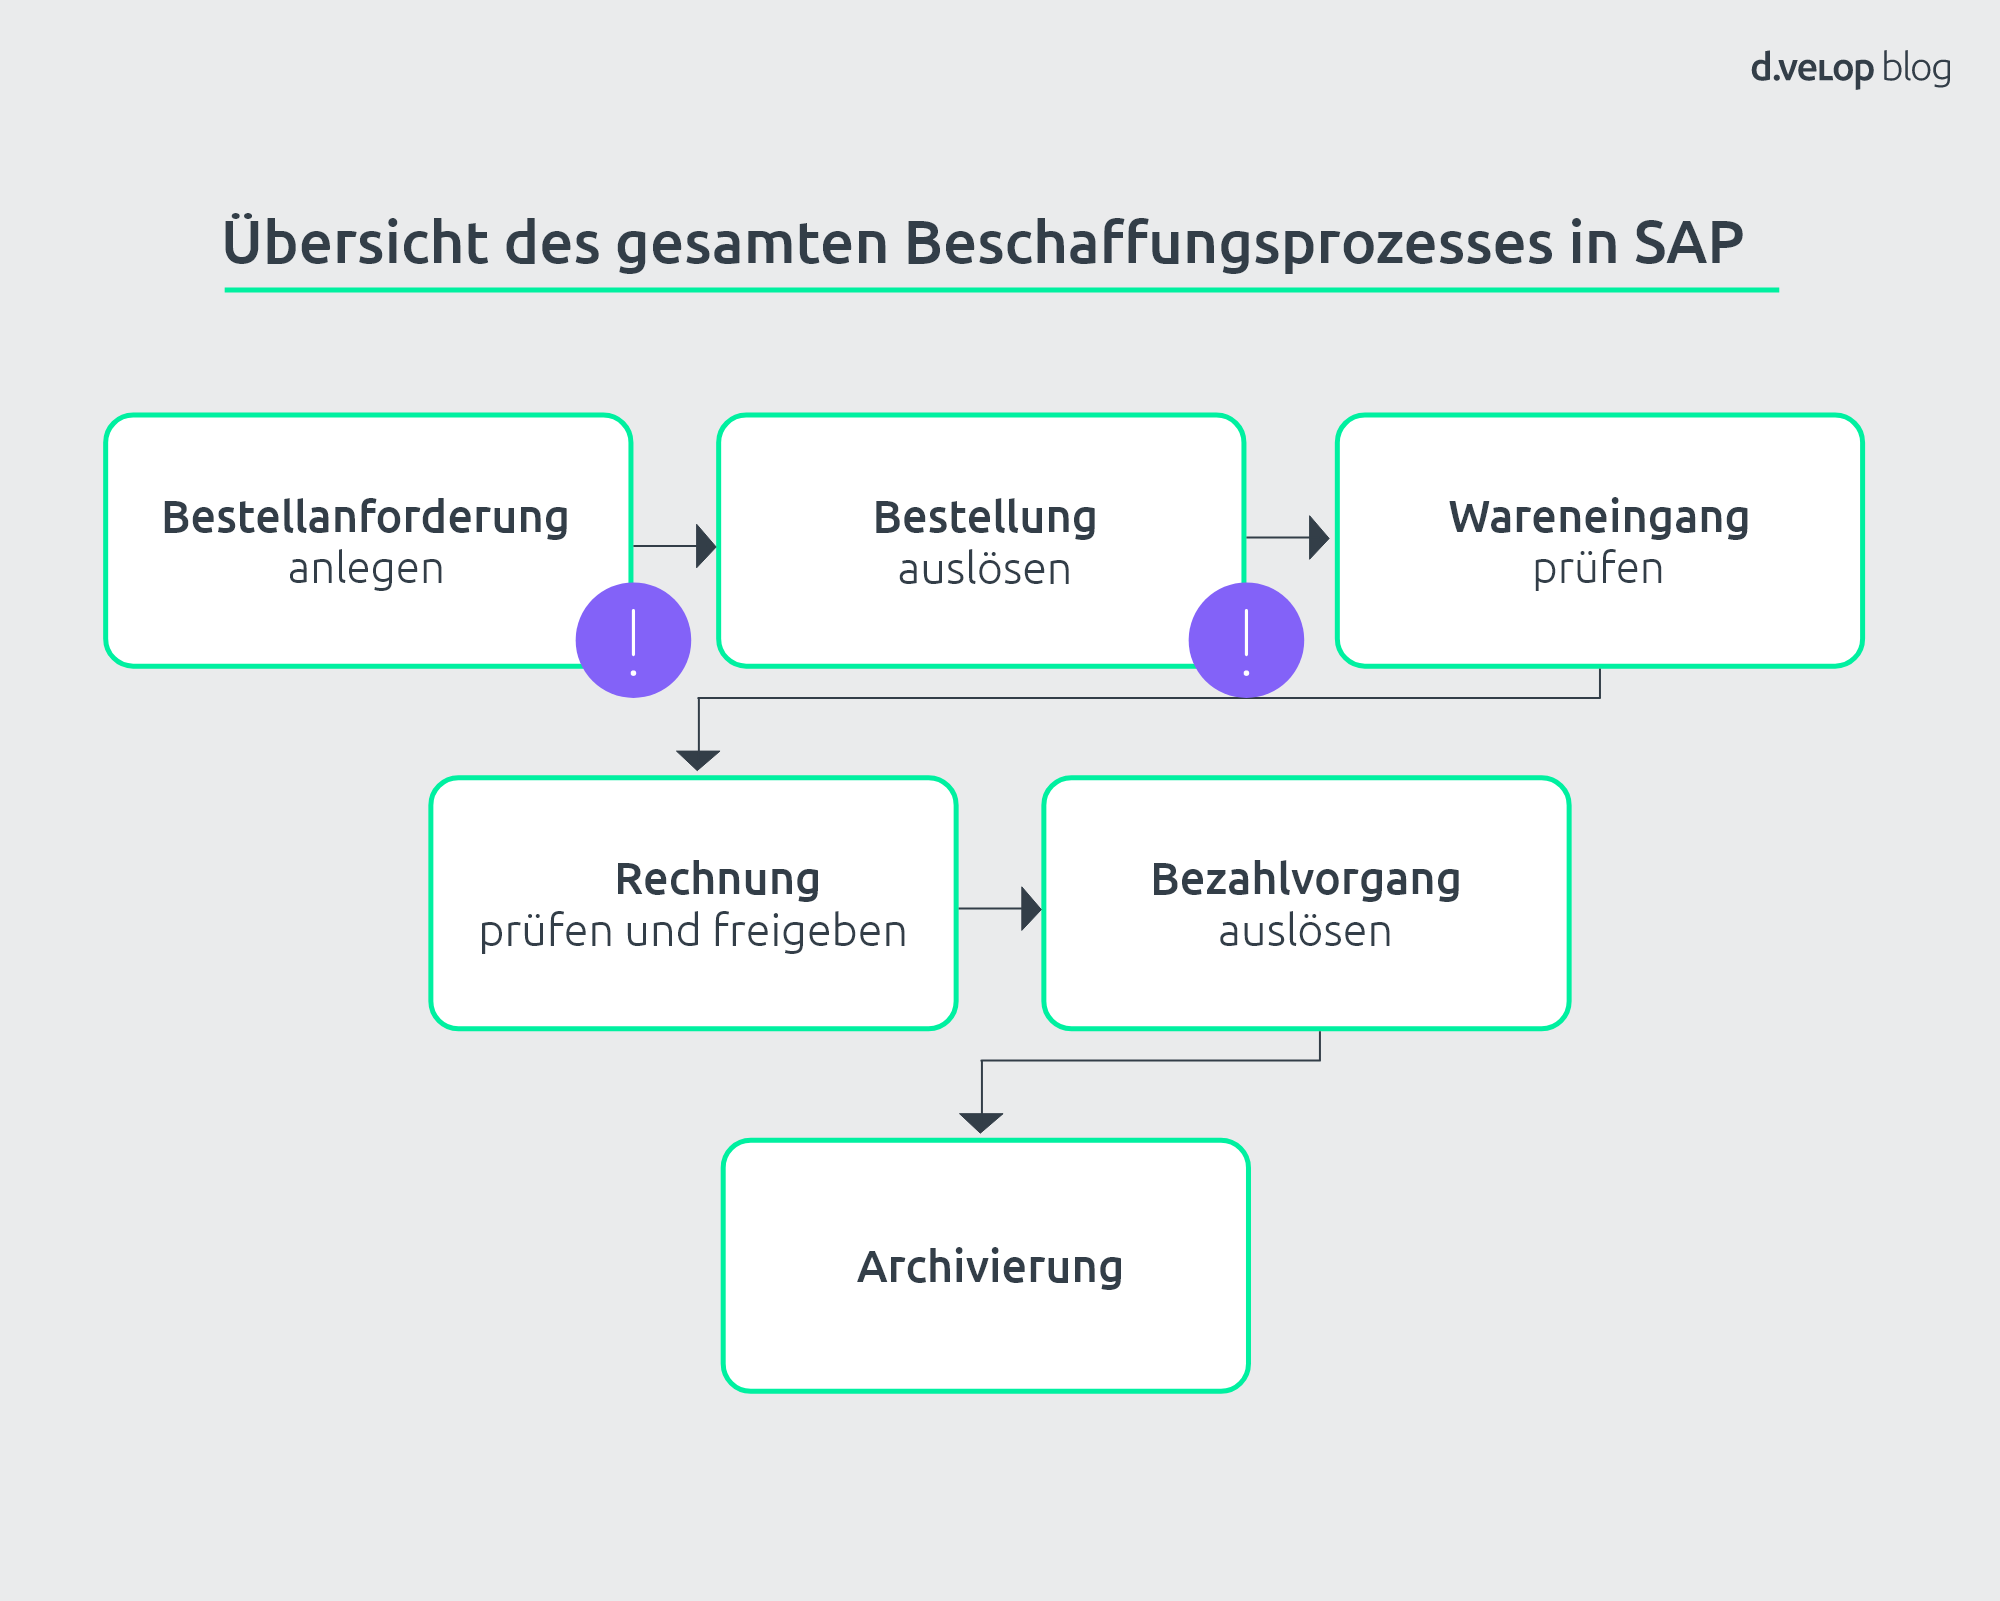 SAP Bestellanforderung (BANF) - Definition, Prozess & Vorteile